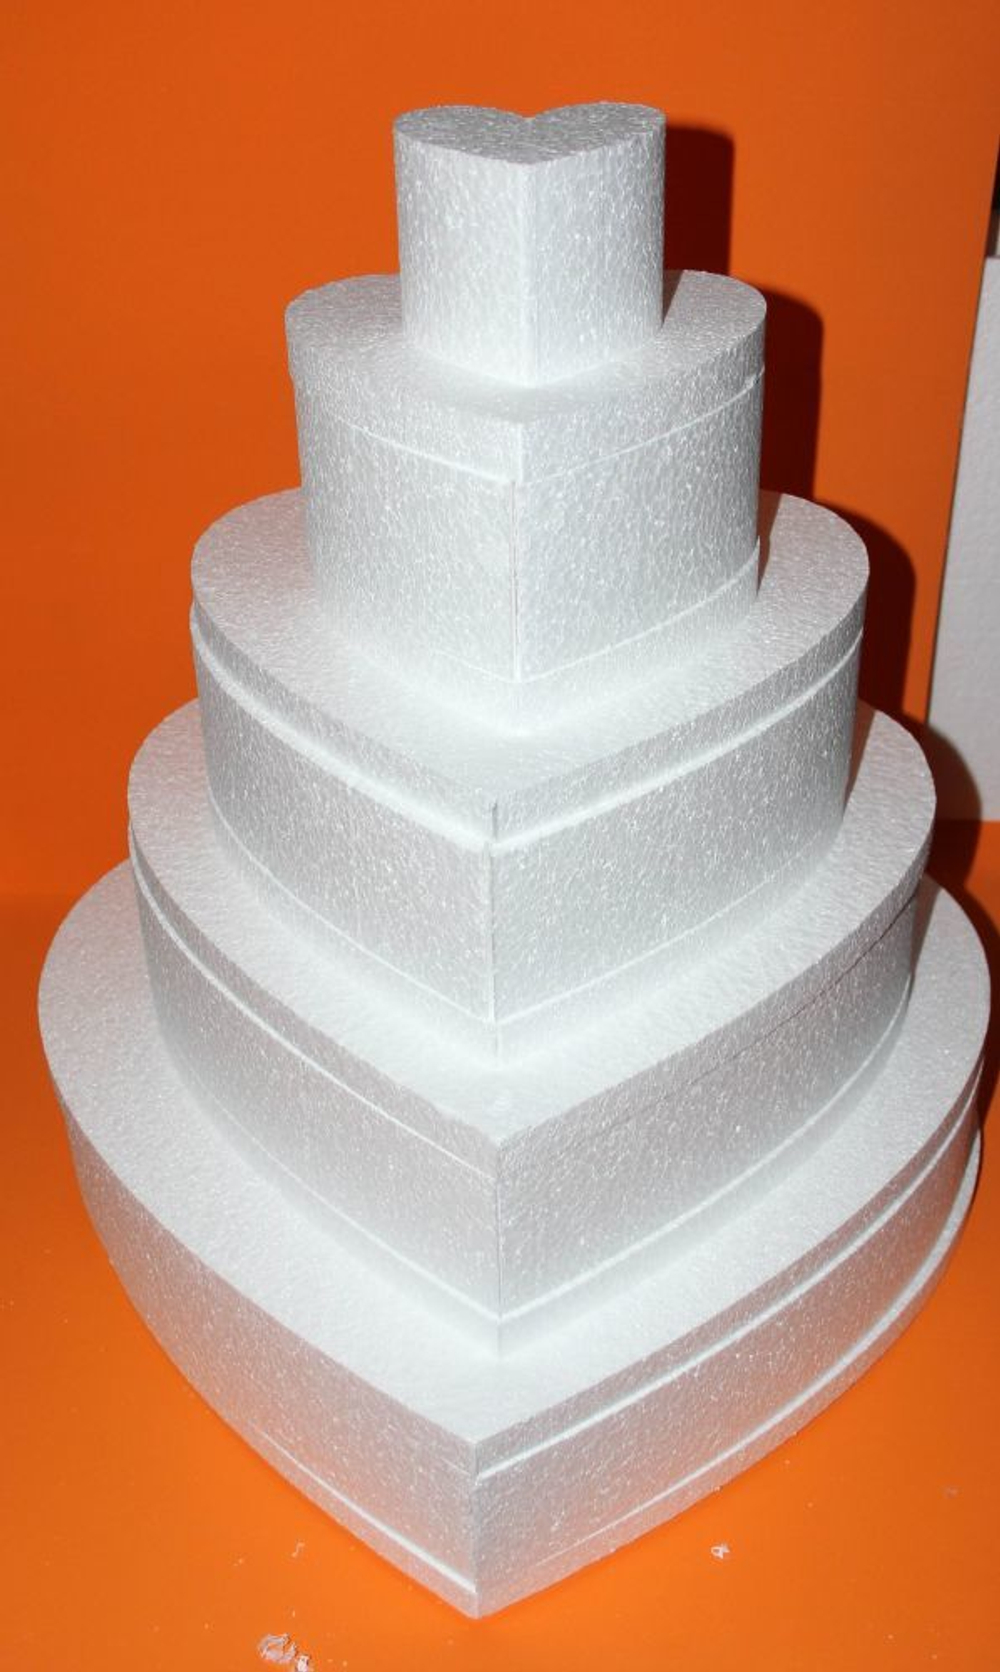 Муляж торта пенопластовый, круг d=12 см, высота 10 см